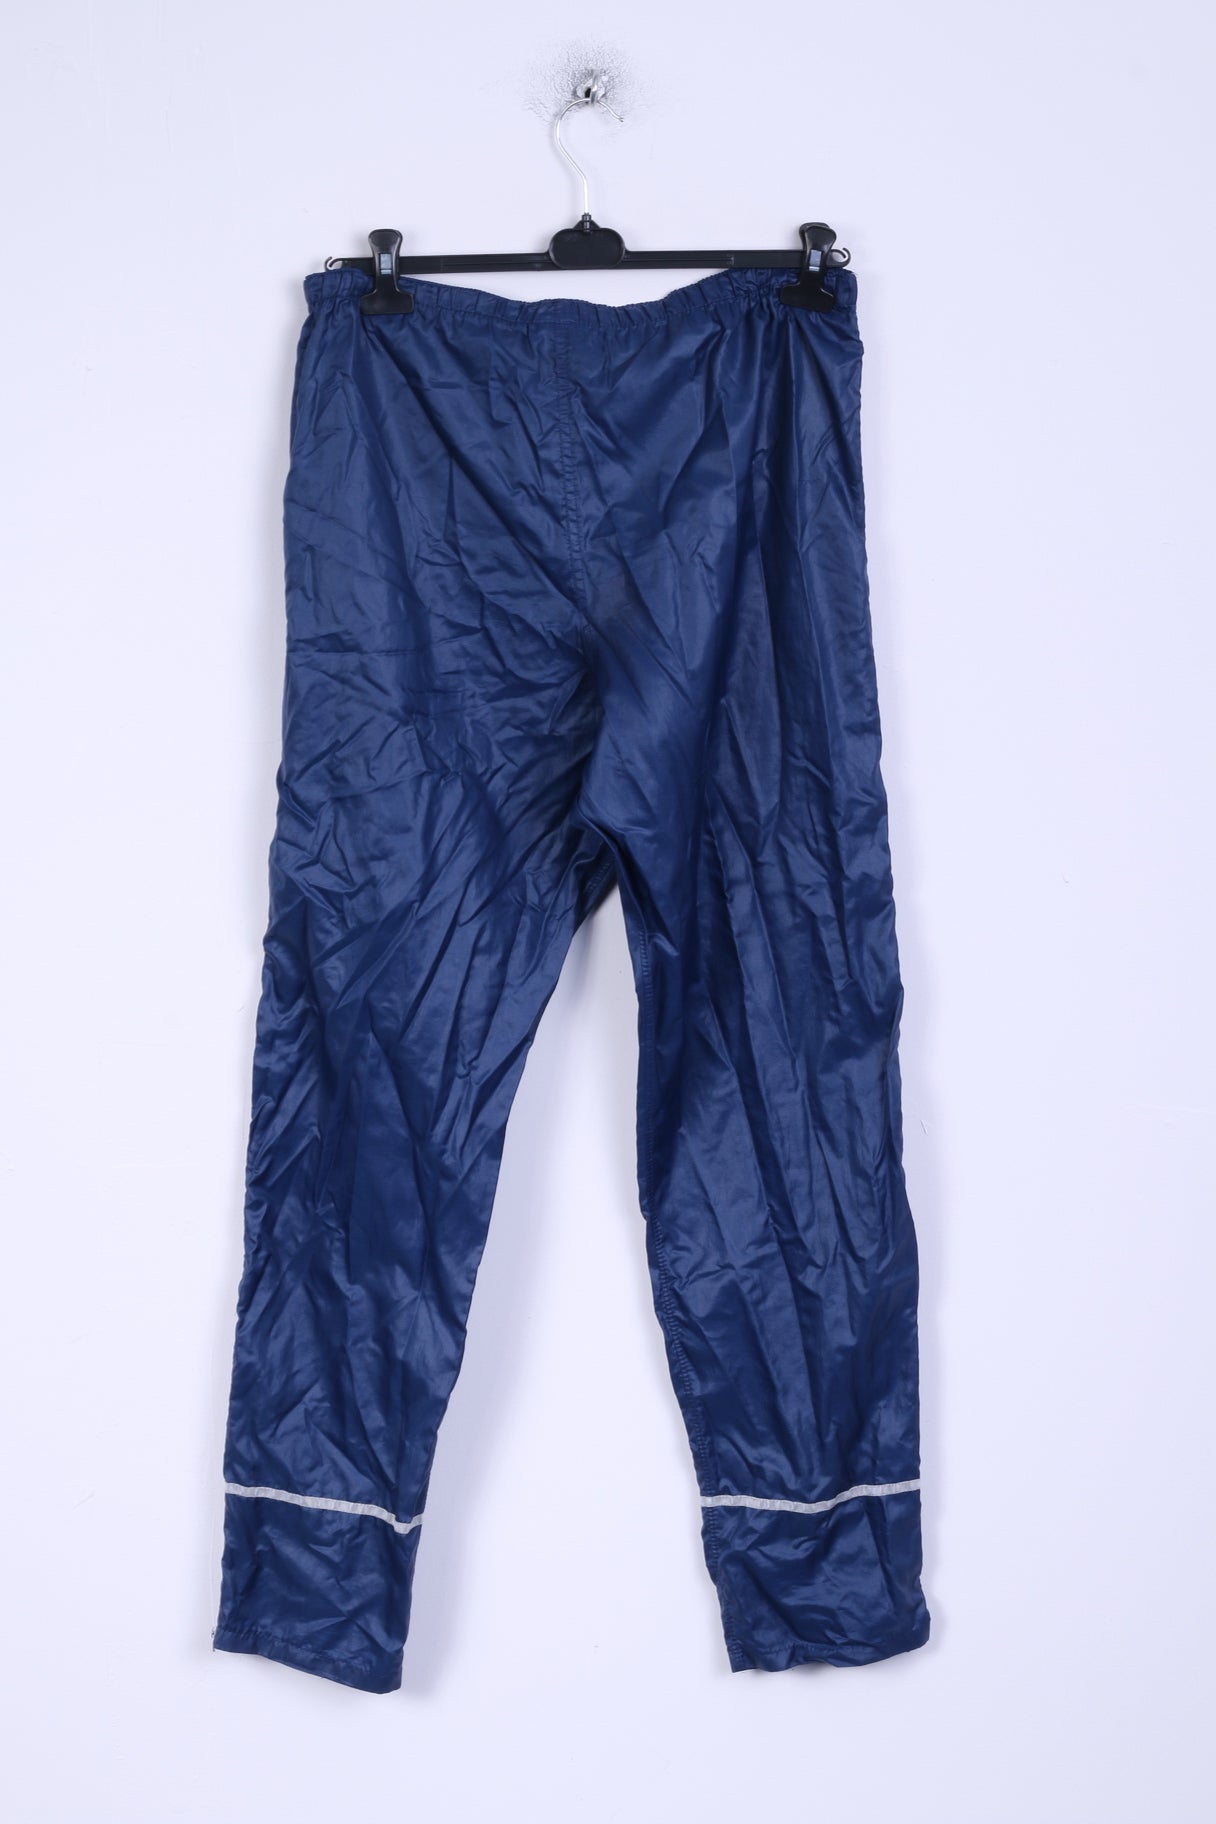 New Line Pantalon XL Homme Pantalon de Trekking Imperméable Nylon Marine